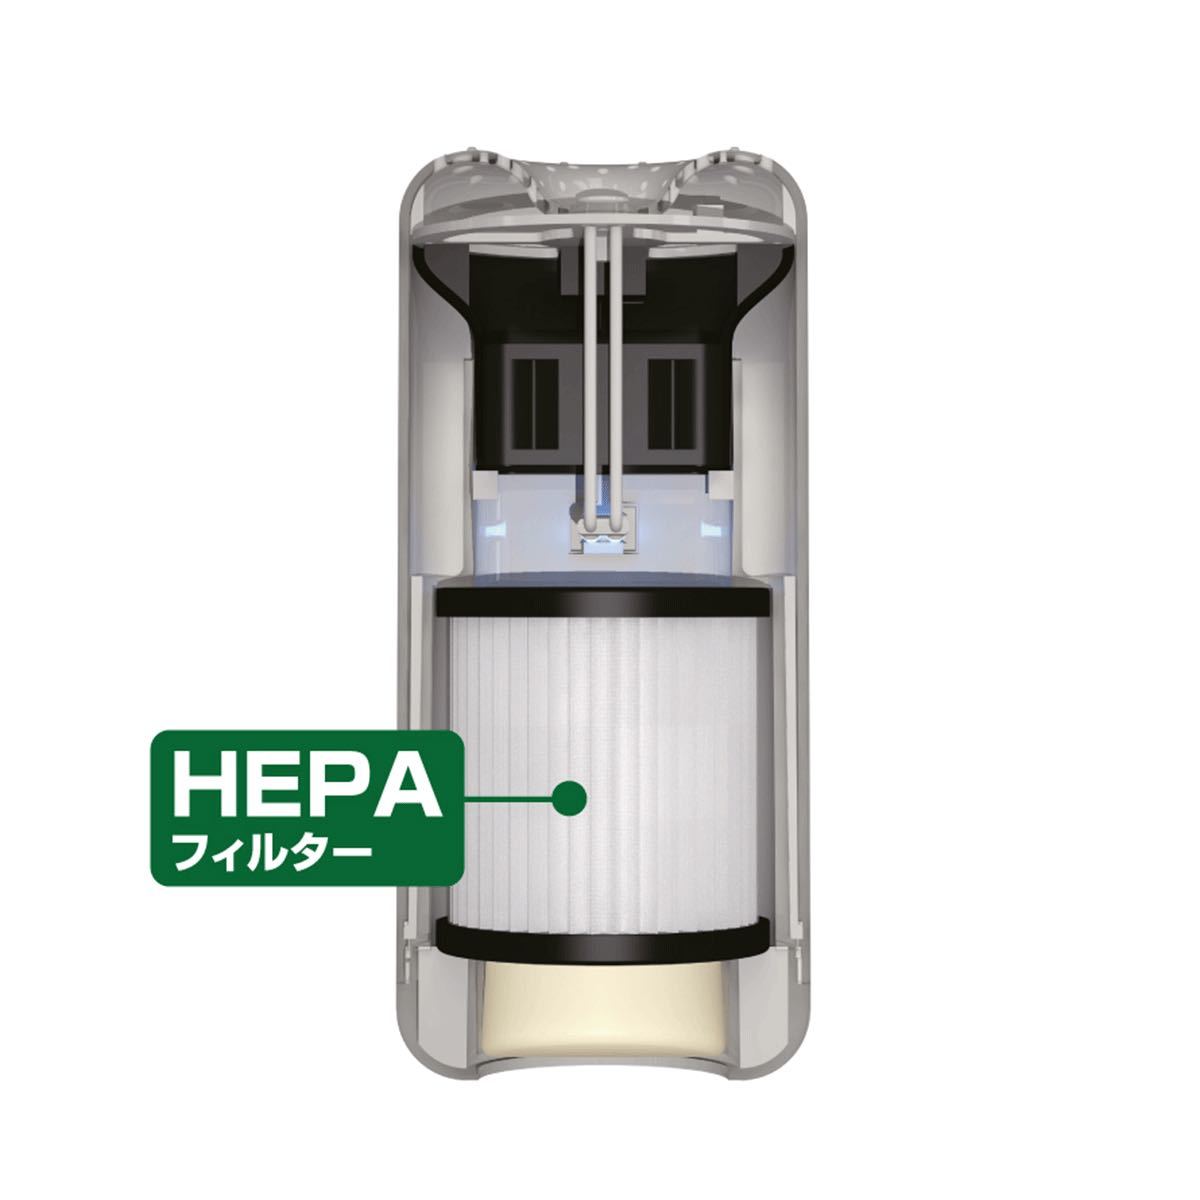 ナポレックス 空気清浄器 AT-107 ブラック USB電源 UVランプ除菌消臭 HEPAフィルター搭載 アロマ機能付 高機能